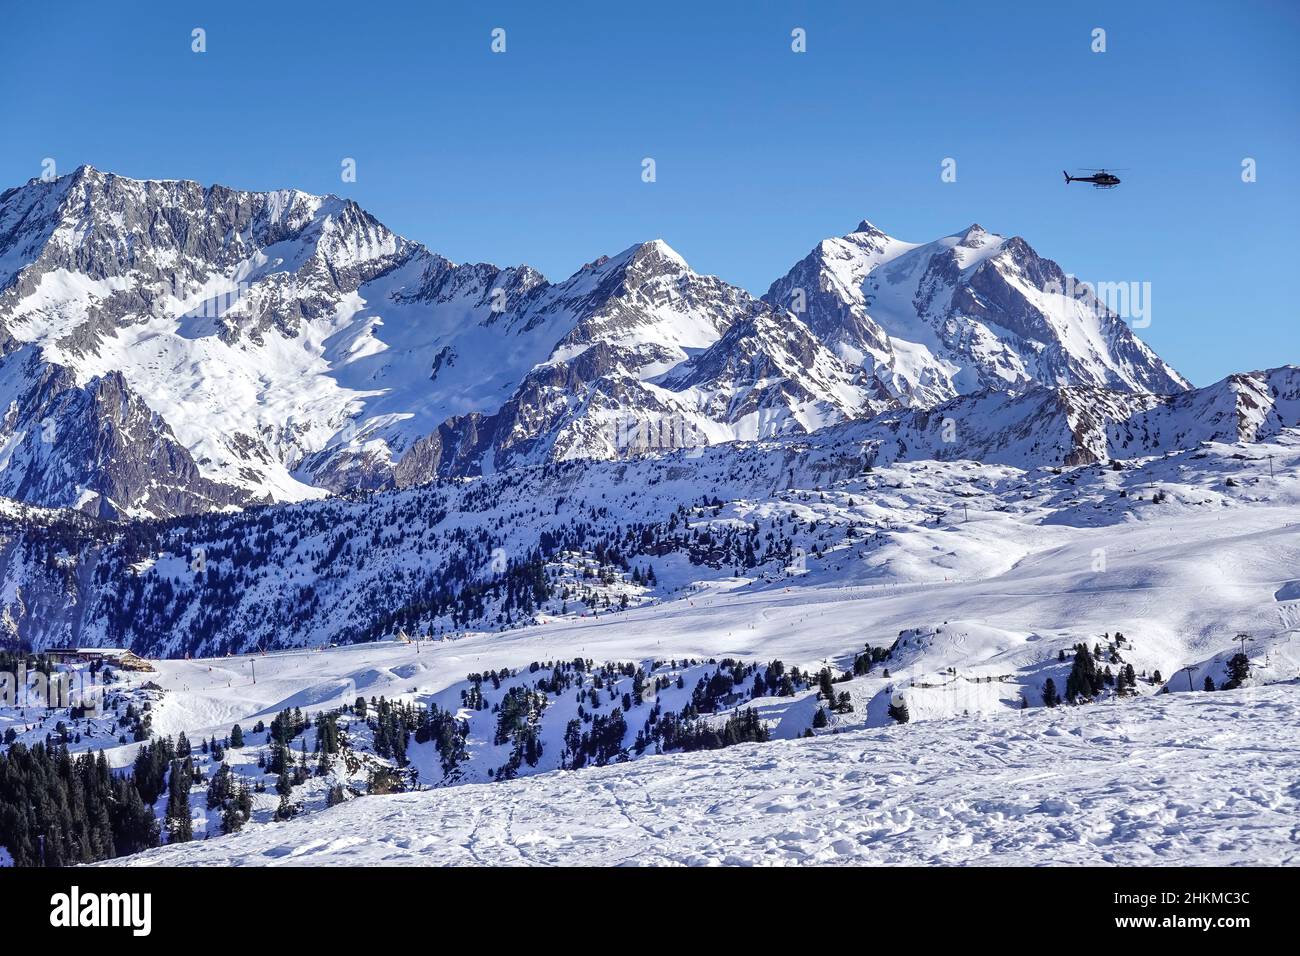 Skipiste und Bergwelt BEI Couchevel Moriond, Vallée de Courchevel, Département Savoie, Frankreich Banque D'Images